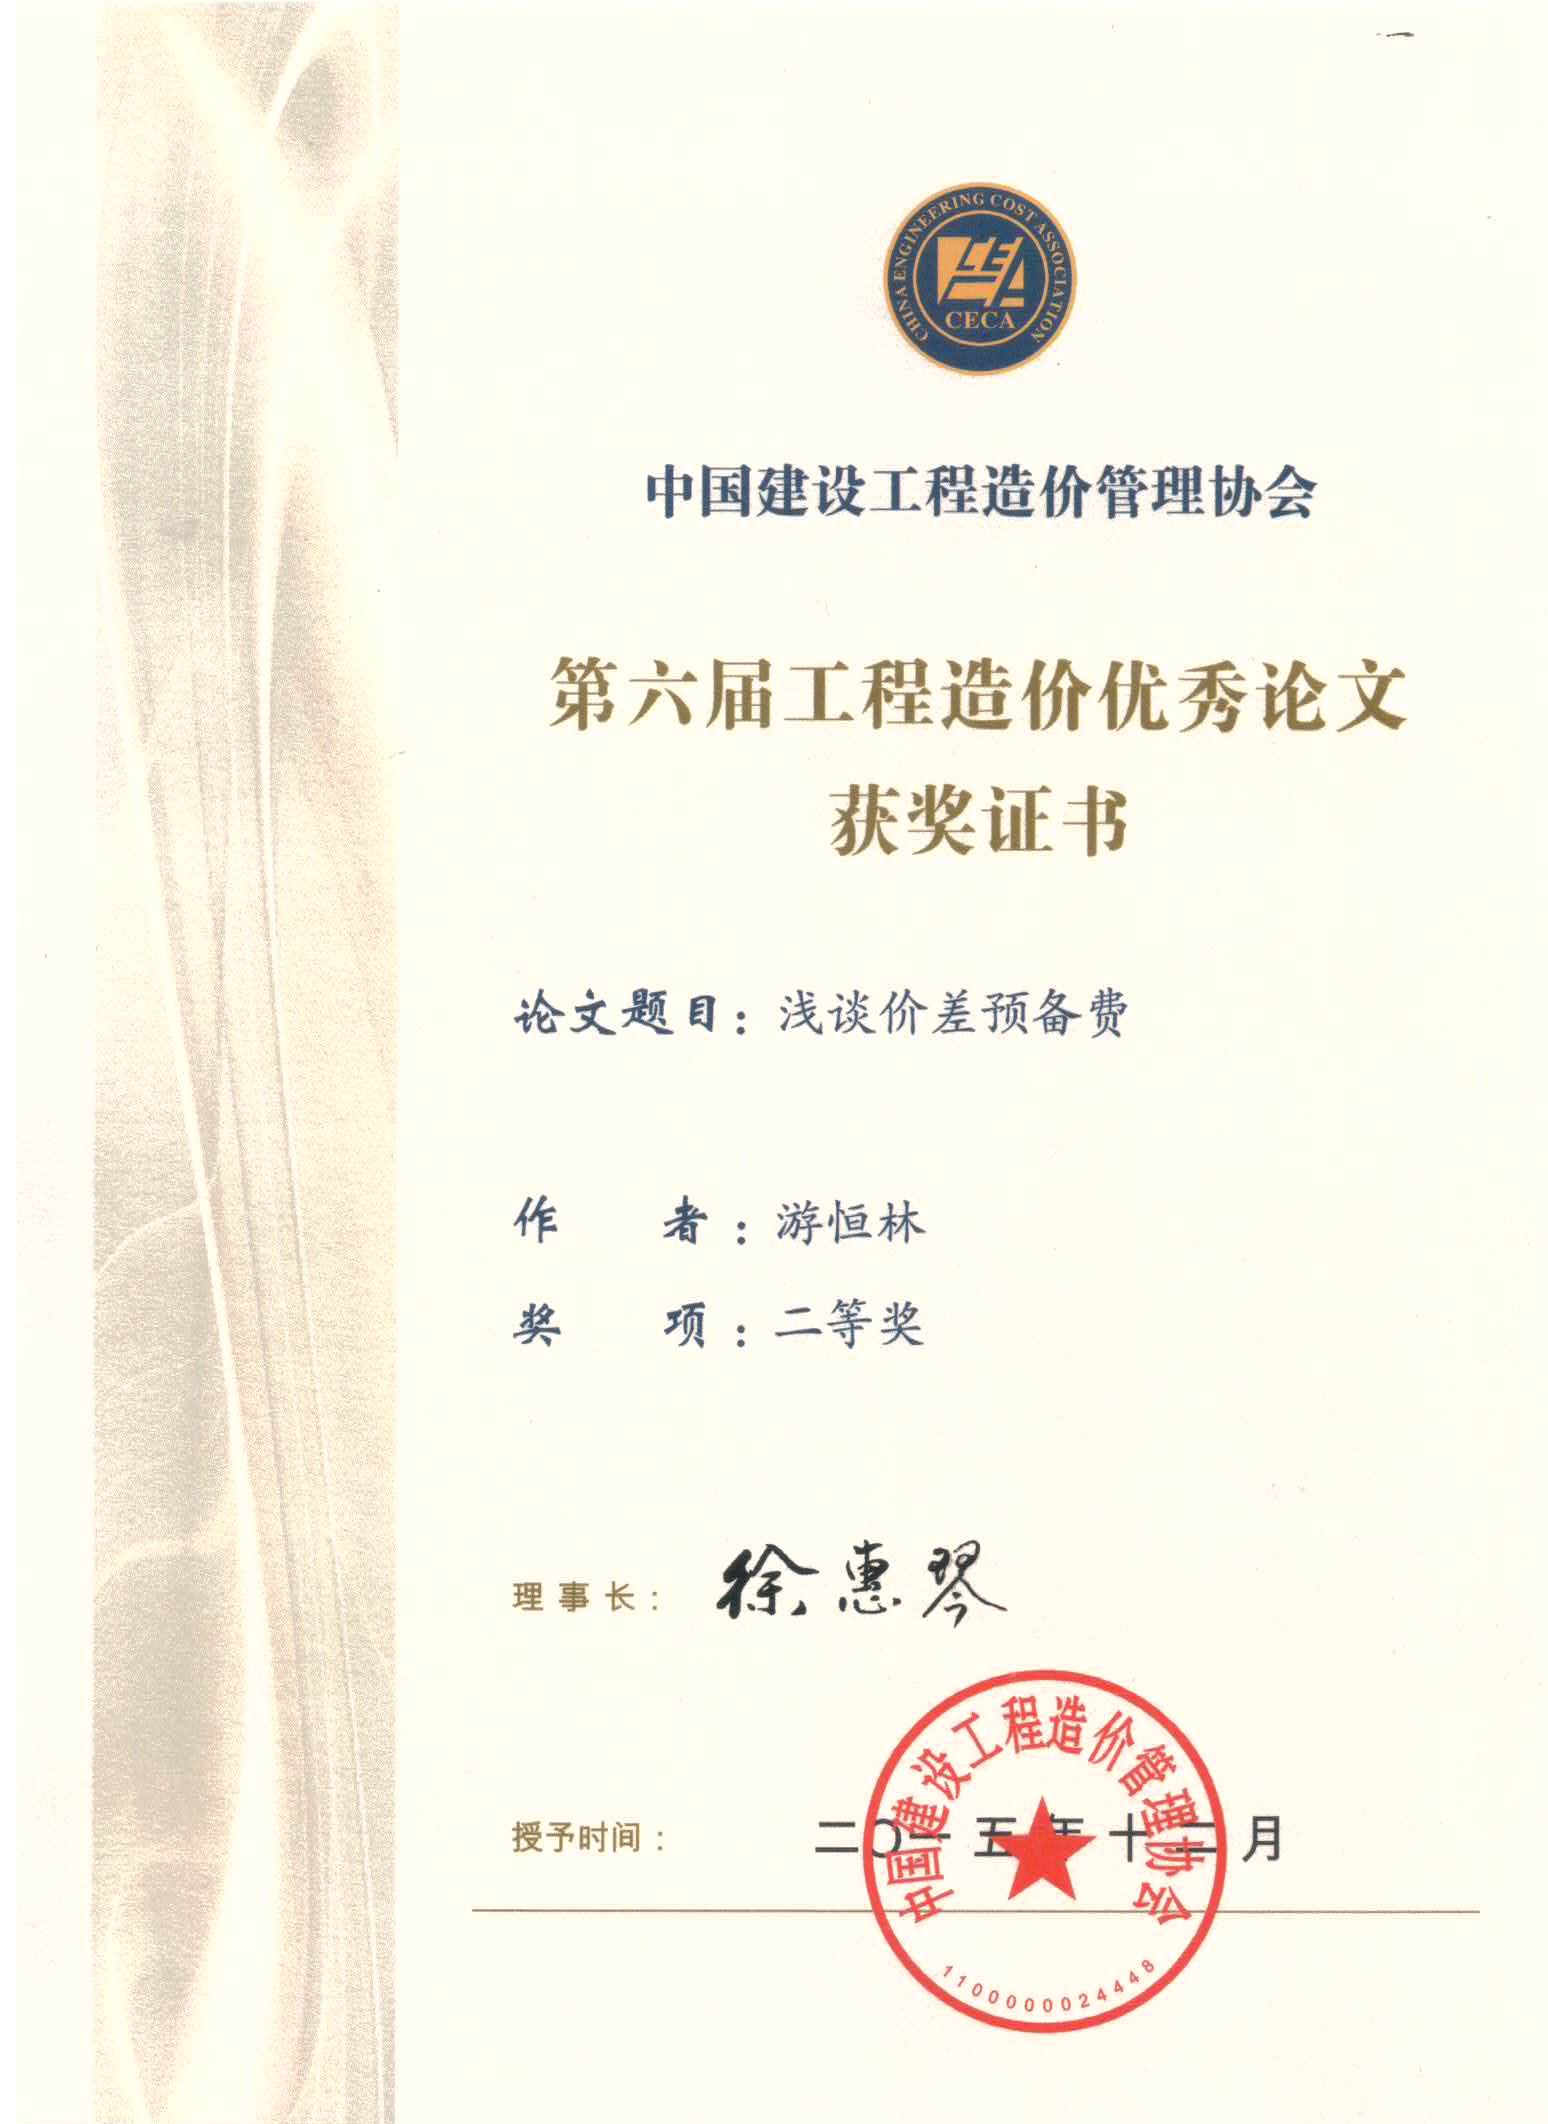 第六届工程造价优秀论文获奖证书(游恒林二